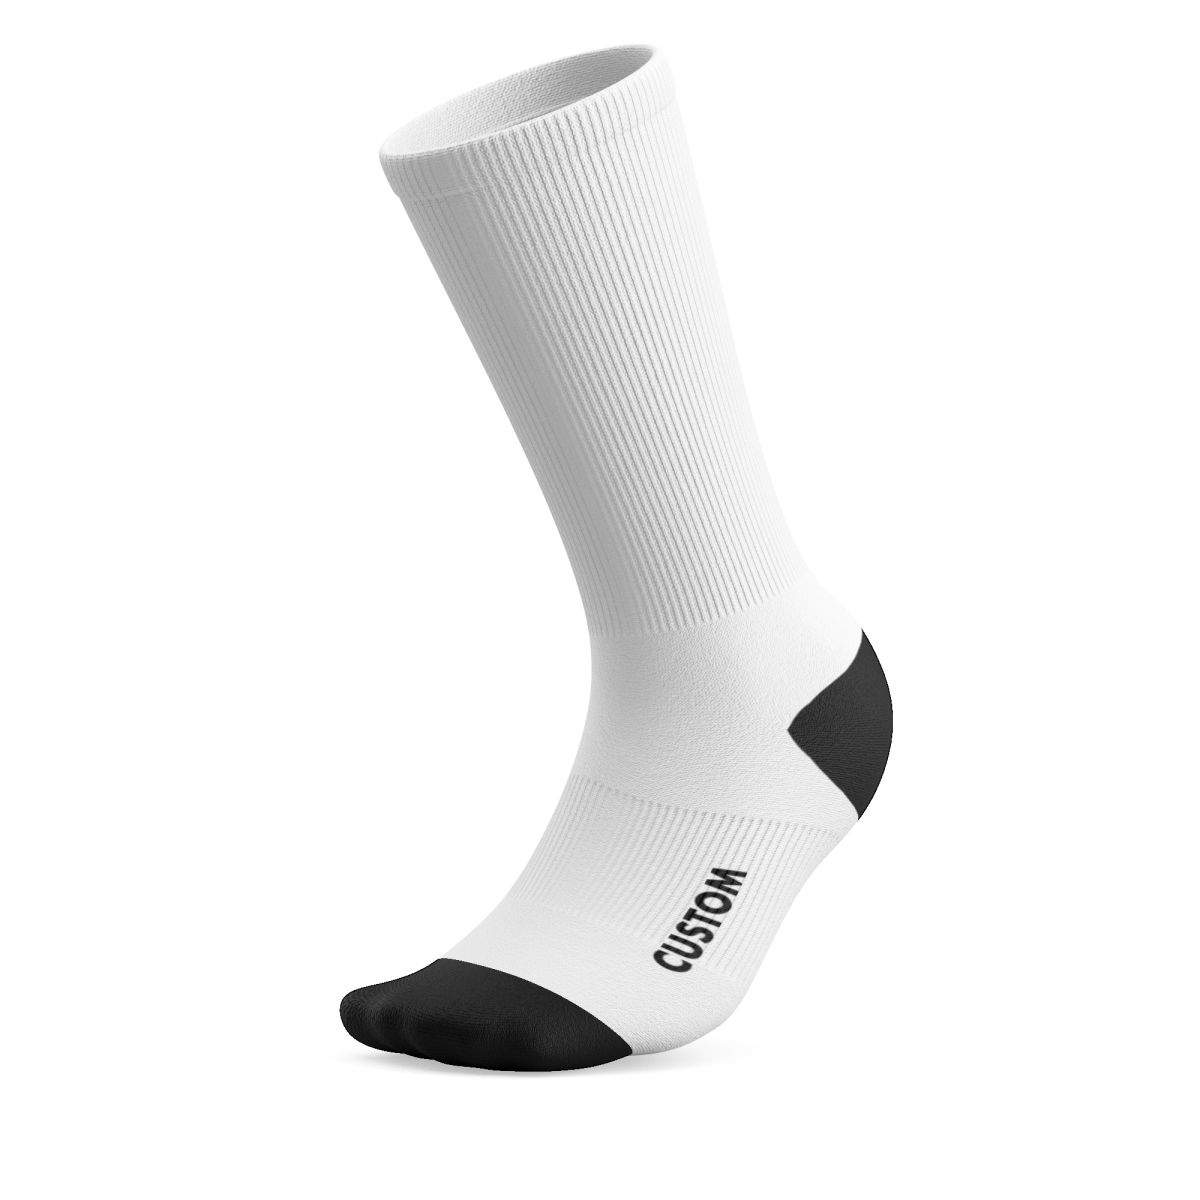 Custom-Printed Socks | Single Pair Orders or More | DeFeet